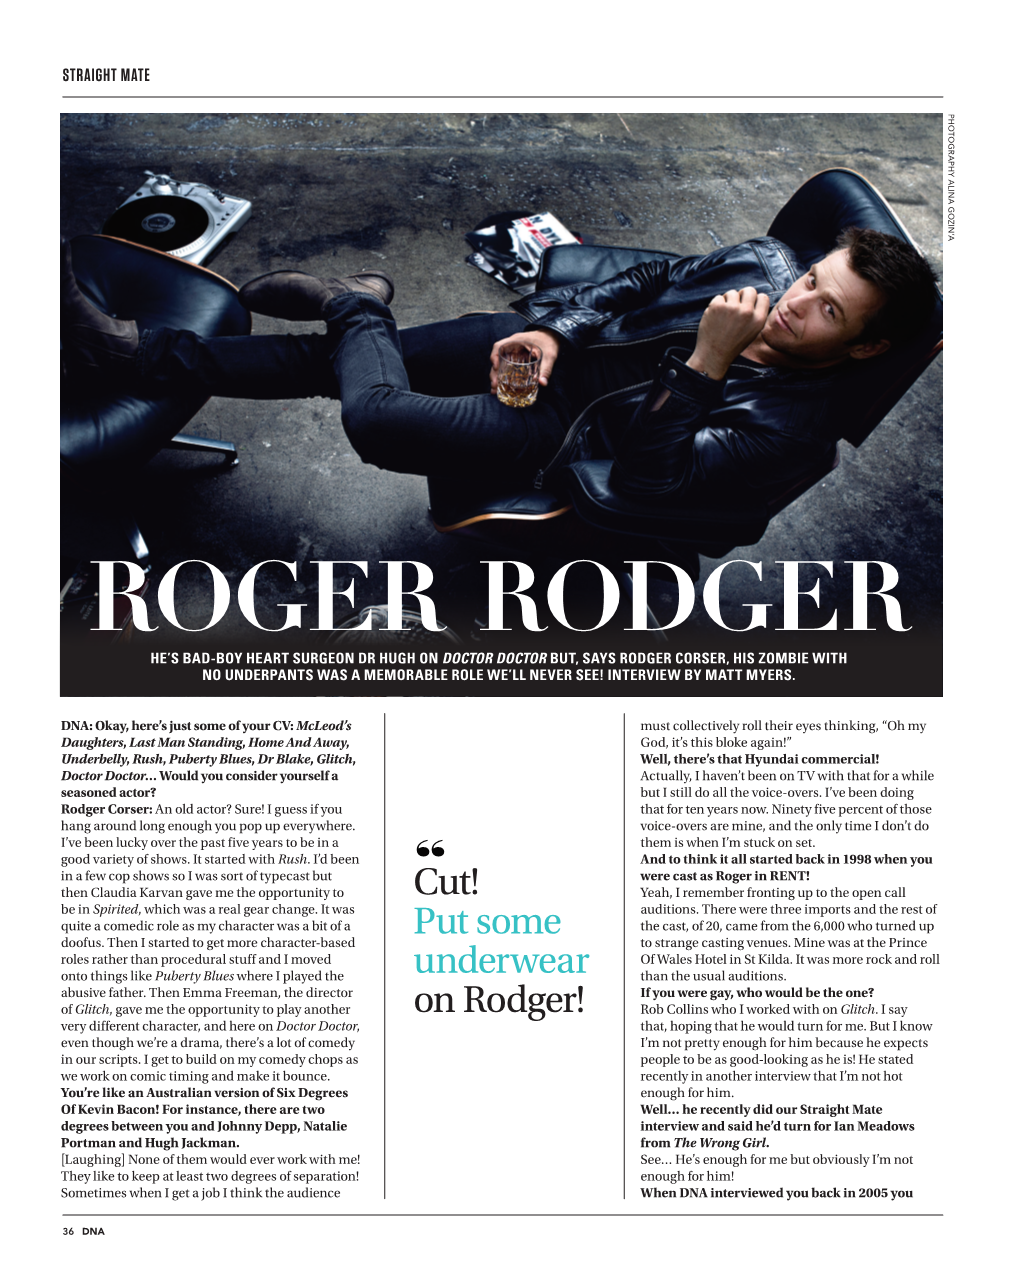 Roger Rodger